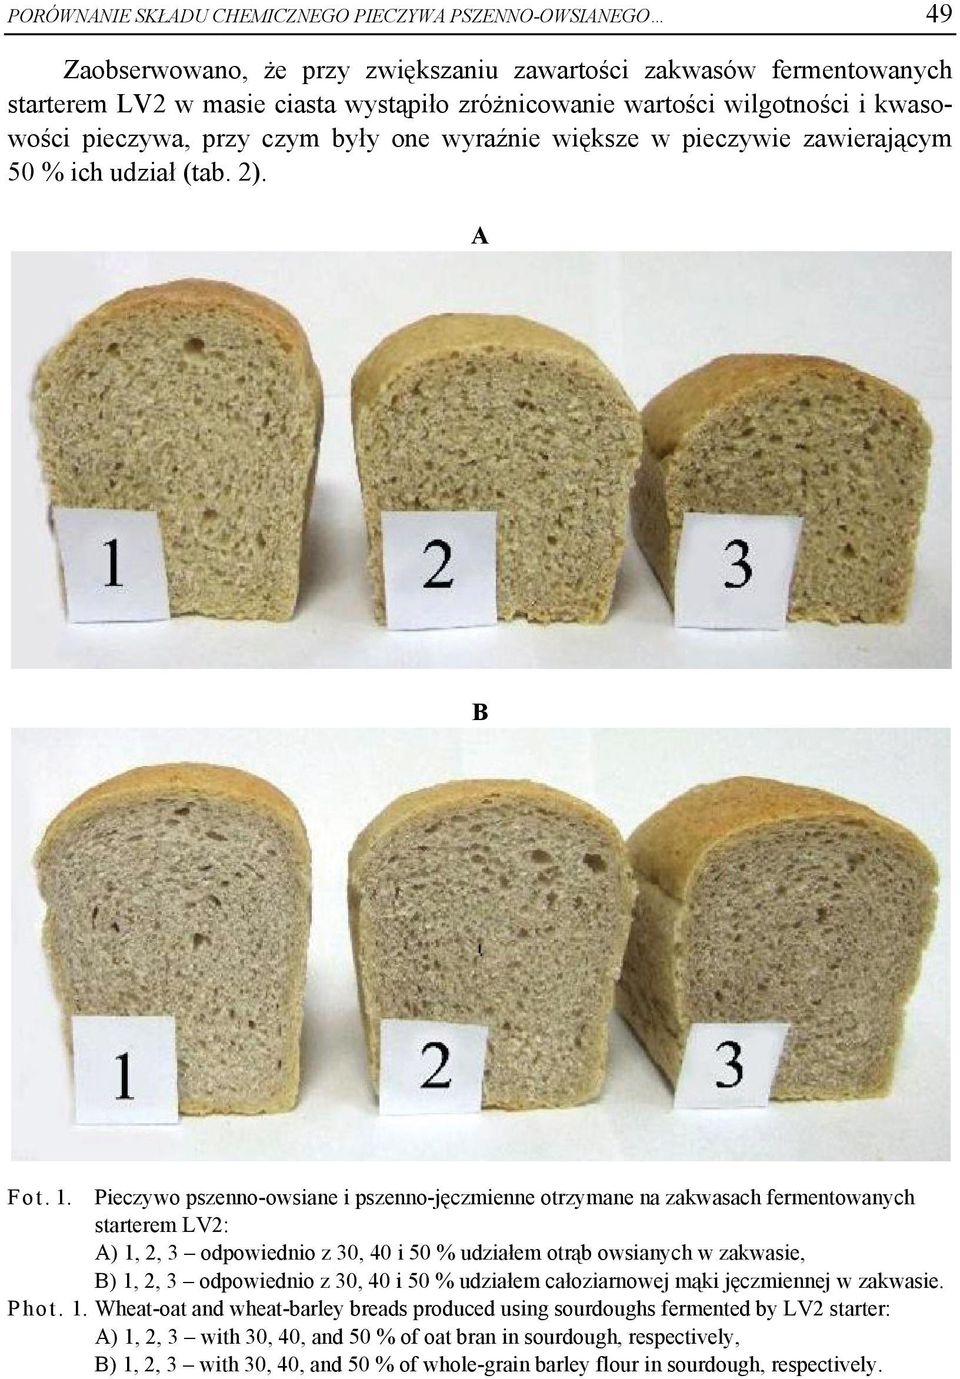 Pieczywo pszenno-owsiane i pszenno-jęczmienne otrzymane na zakwasach fermentowanych starterem LV2: A) 1, 2, 3 odpowiednio z 30, 40 i 50 % udziałem otrąb owsianych w zakwasie, B) 1, 2, 3 odpowiednio z